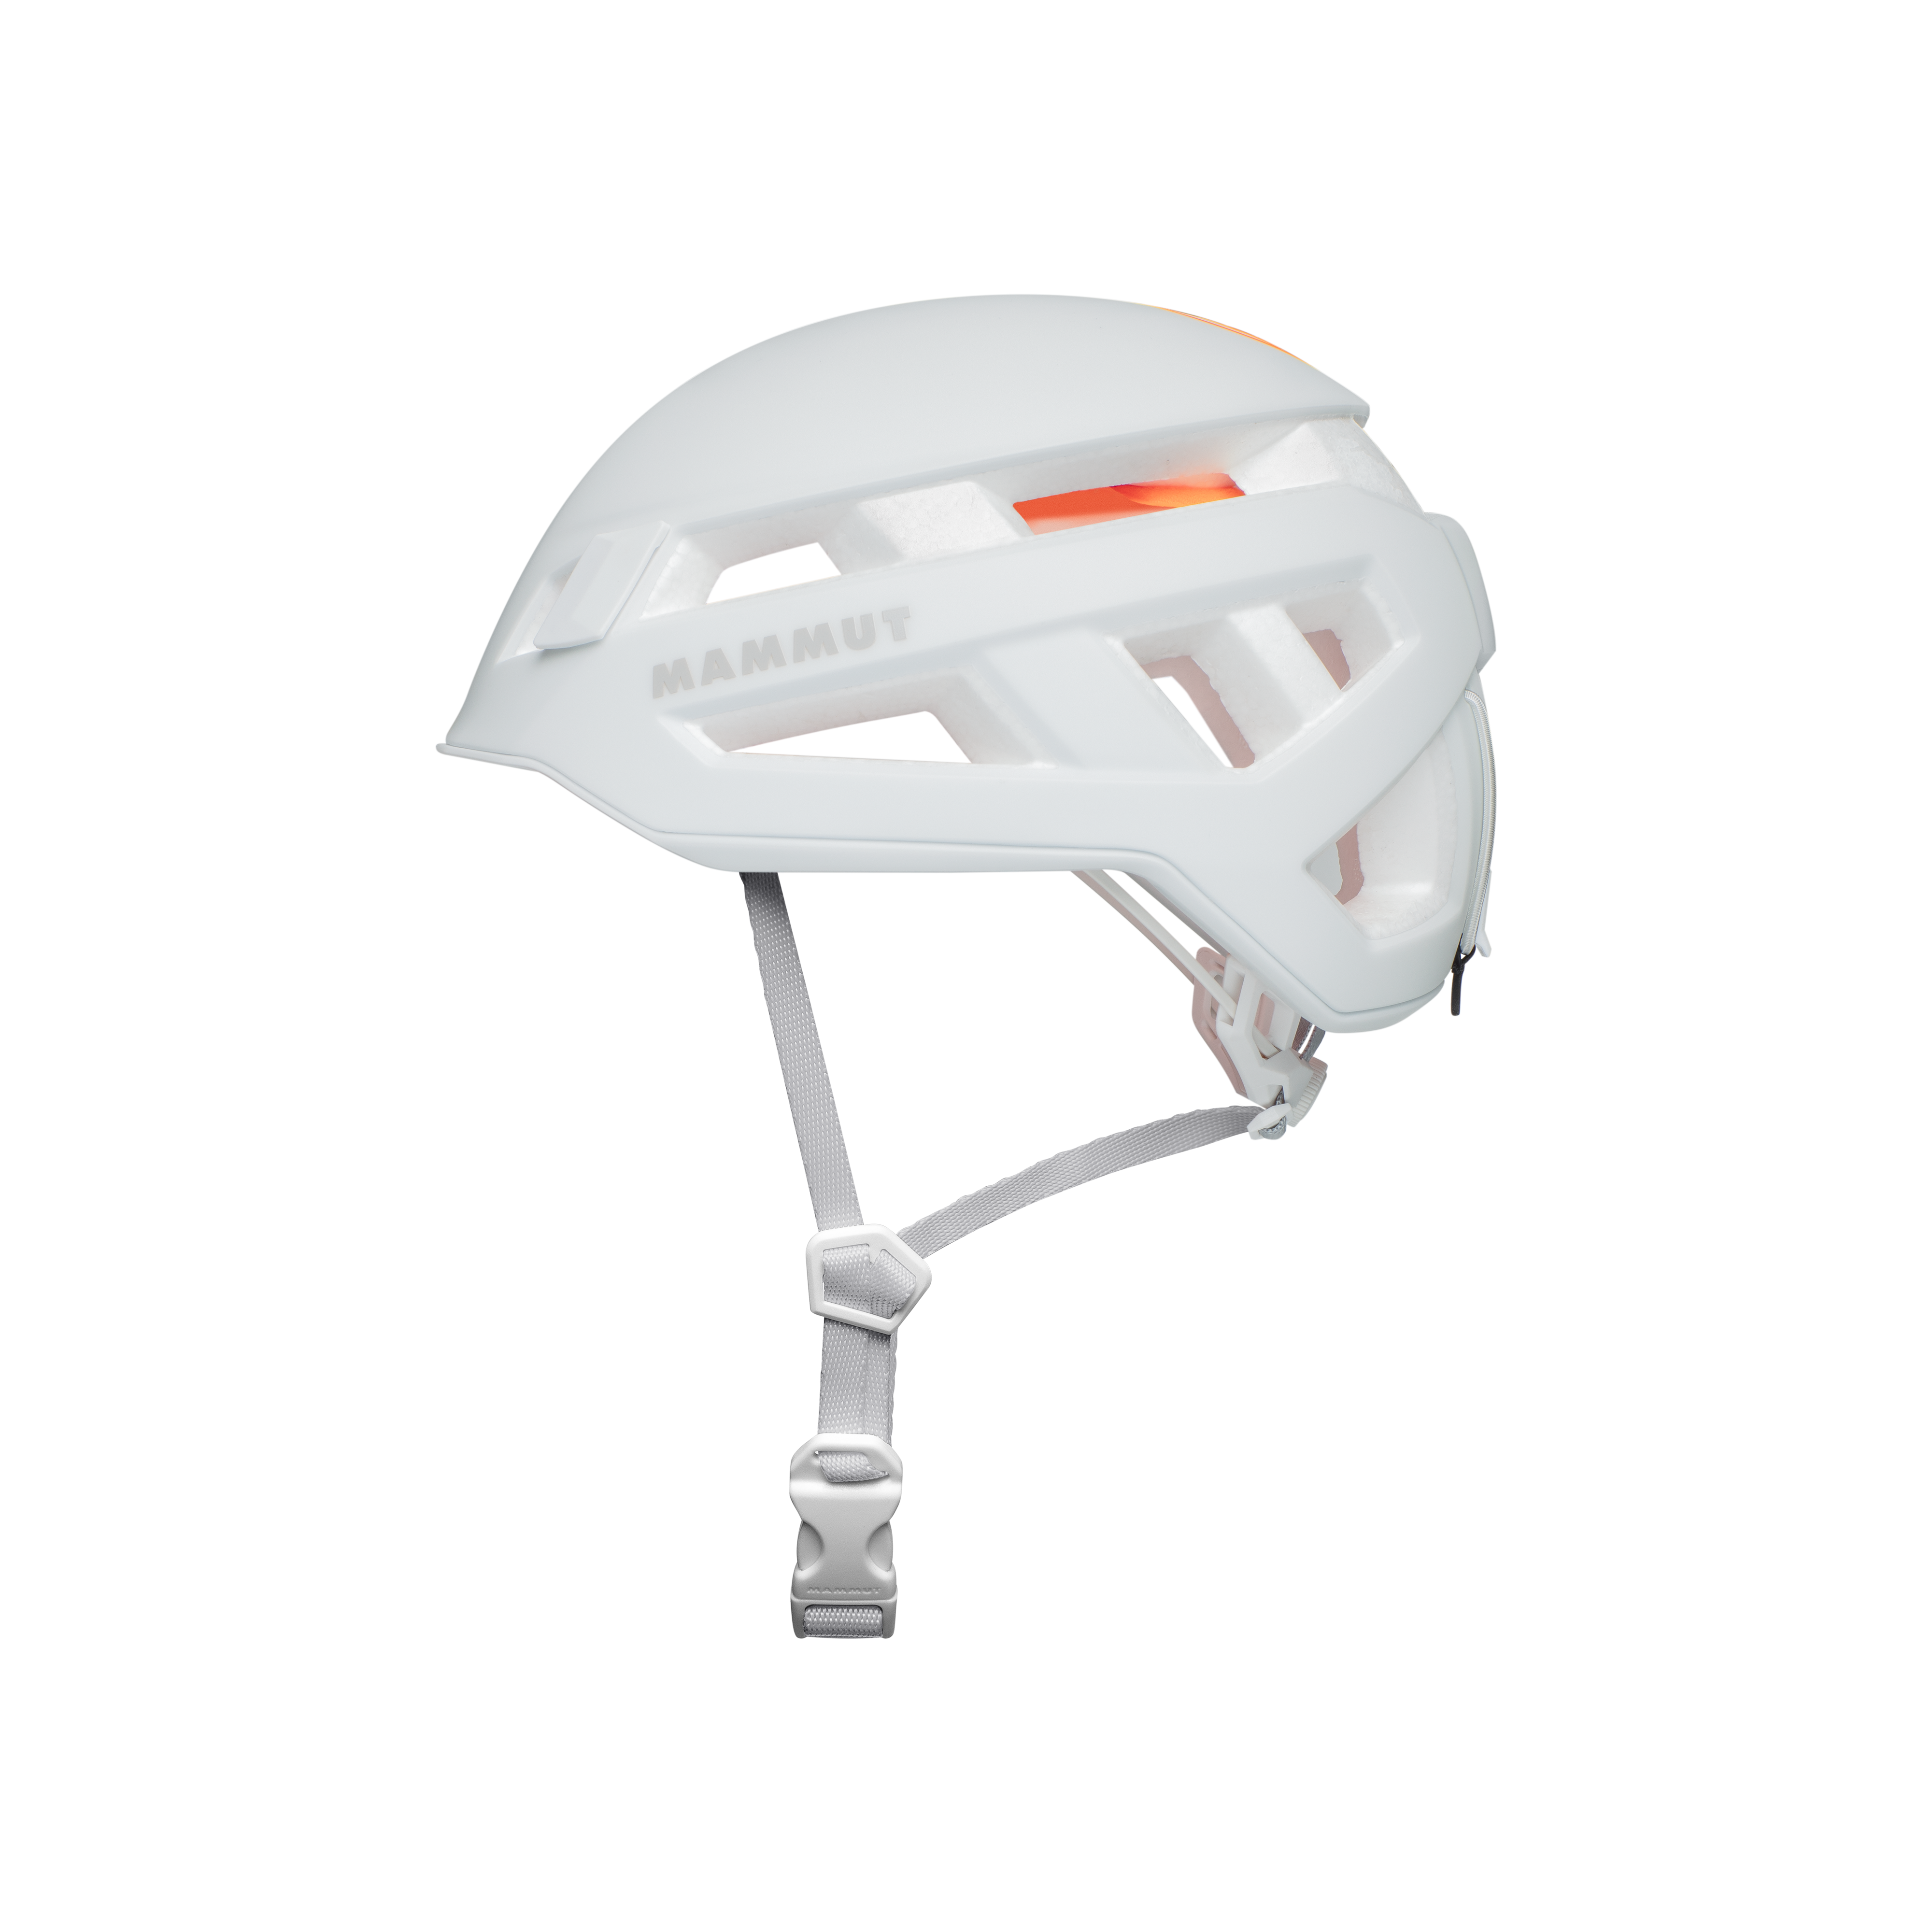 Crag Sender Helmet - white, 52-57cm thumbnail